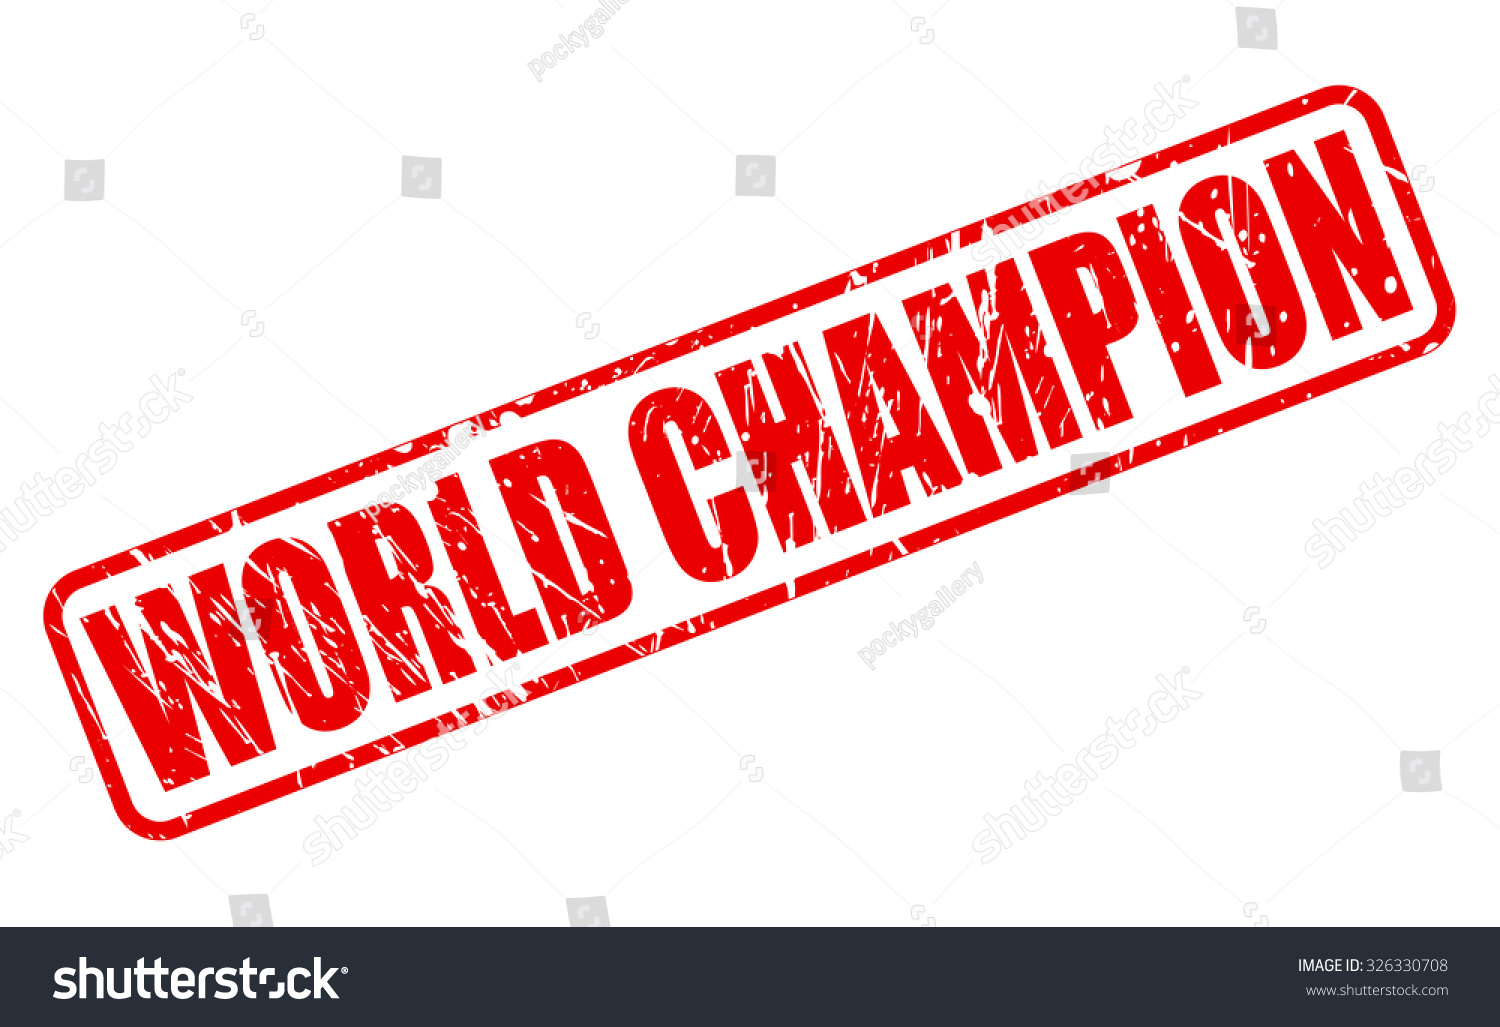 træk vejret Indsprøjtning cyklus World Champion Red Stamp Text On Stock Vector (Royalty Free) 326330708